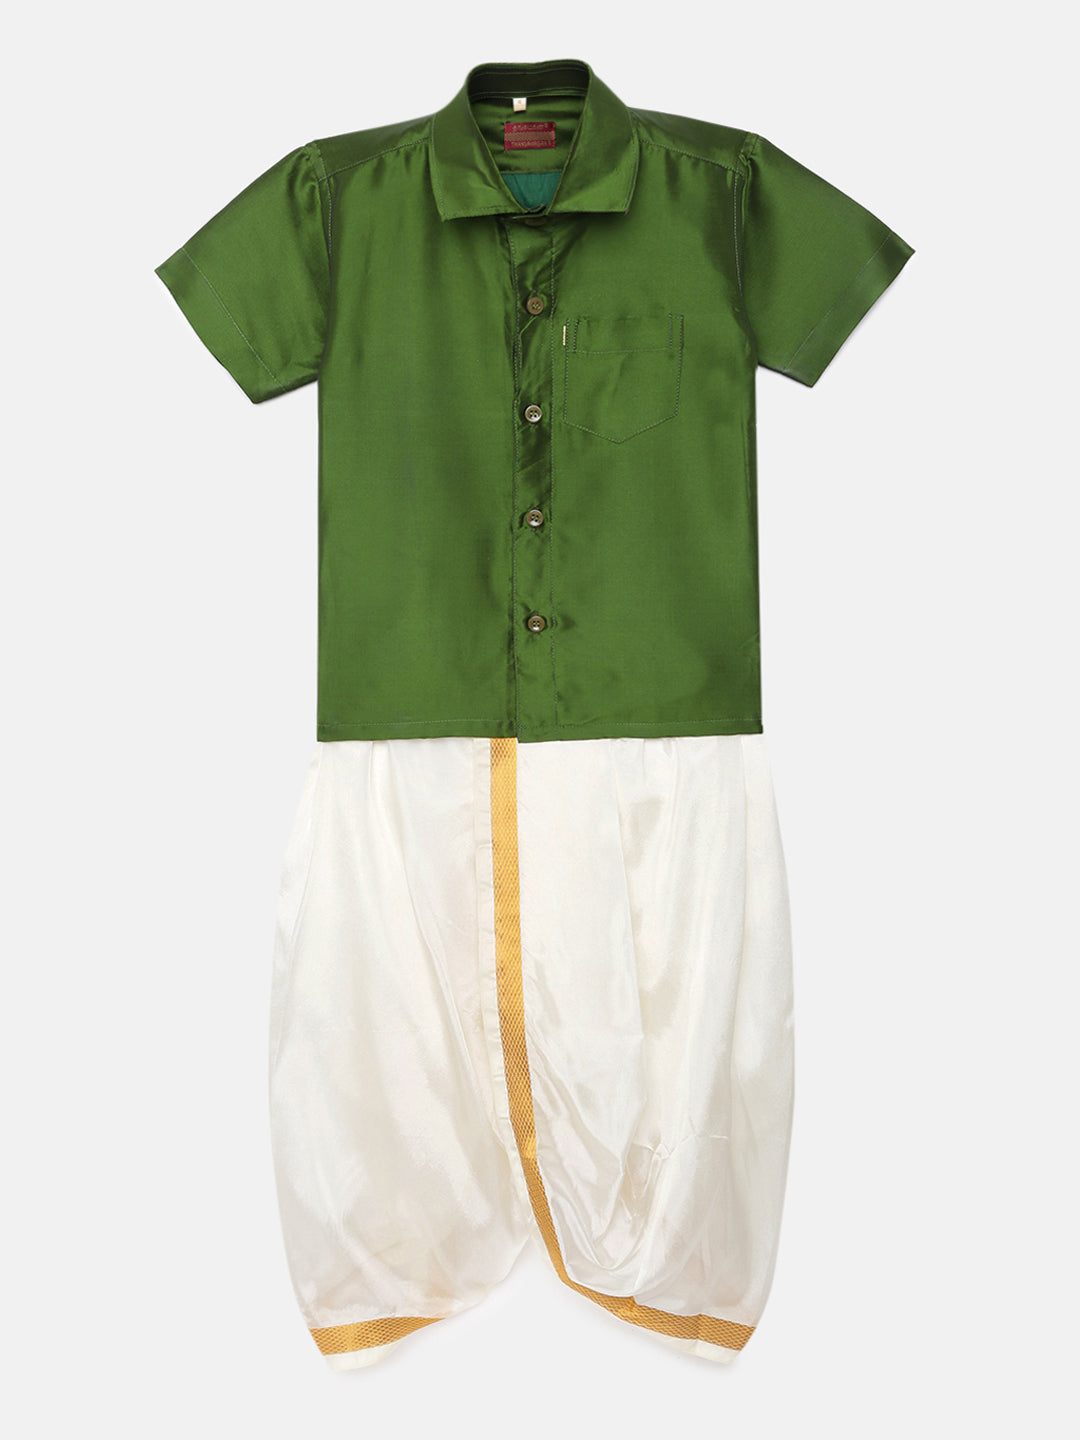 50. Boys Panjagajam & Shirt Set